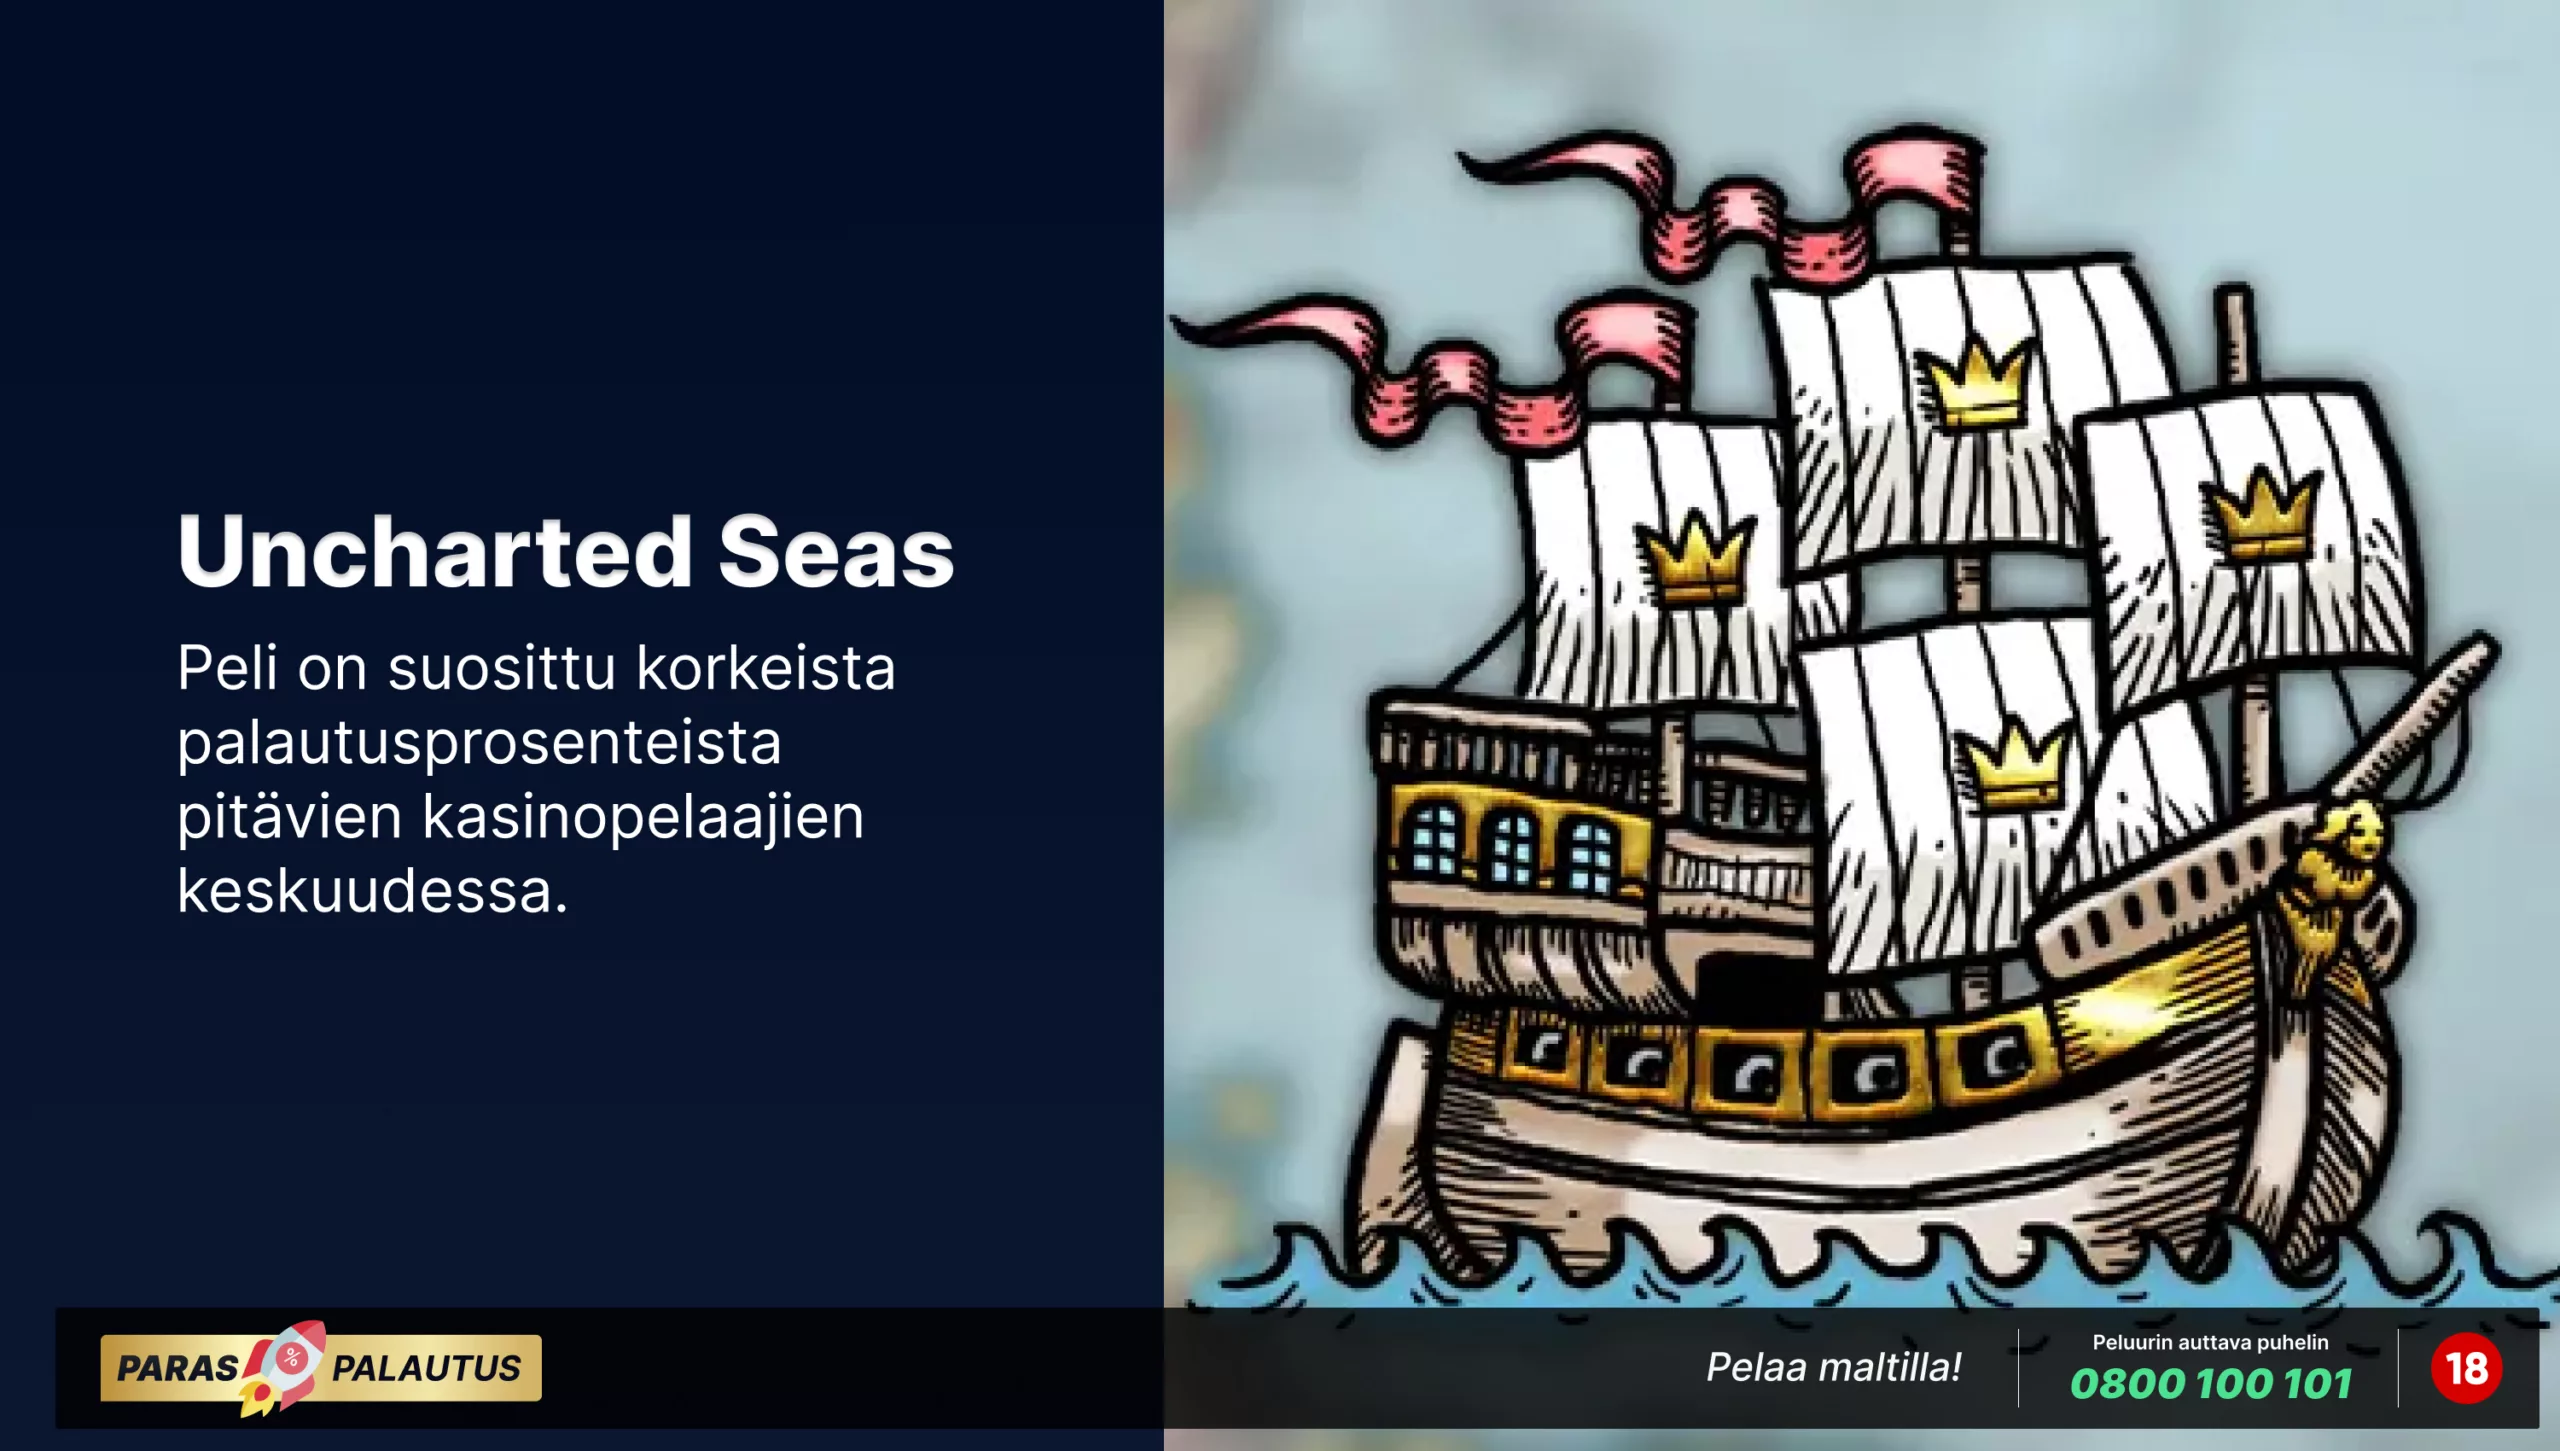 Kuvituskuva '1429 Uncharted Seas' -kolikkopelistä, joka esittää vanhaa purjelaivaa sinisellä merellä. Laivan purjeissa näkyy kruunuja, viitaten pelin kuninkaalliseen teemaan. Pelin suosio perustuu sen korkeaan palautusprosenttiin, mikä on houkutteleva ominaisuus varovaisille kasinopelaajille